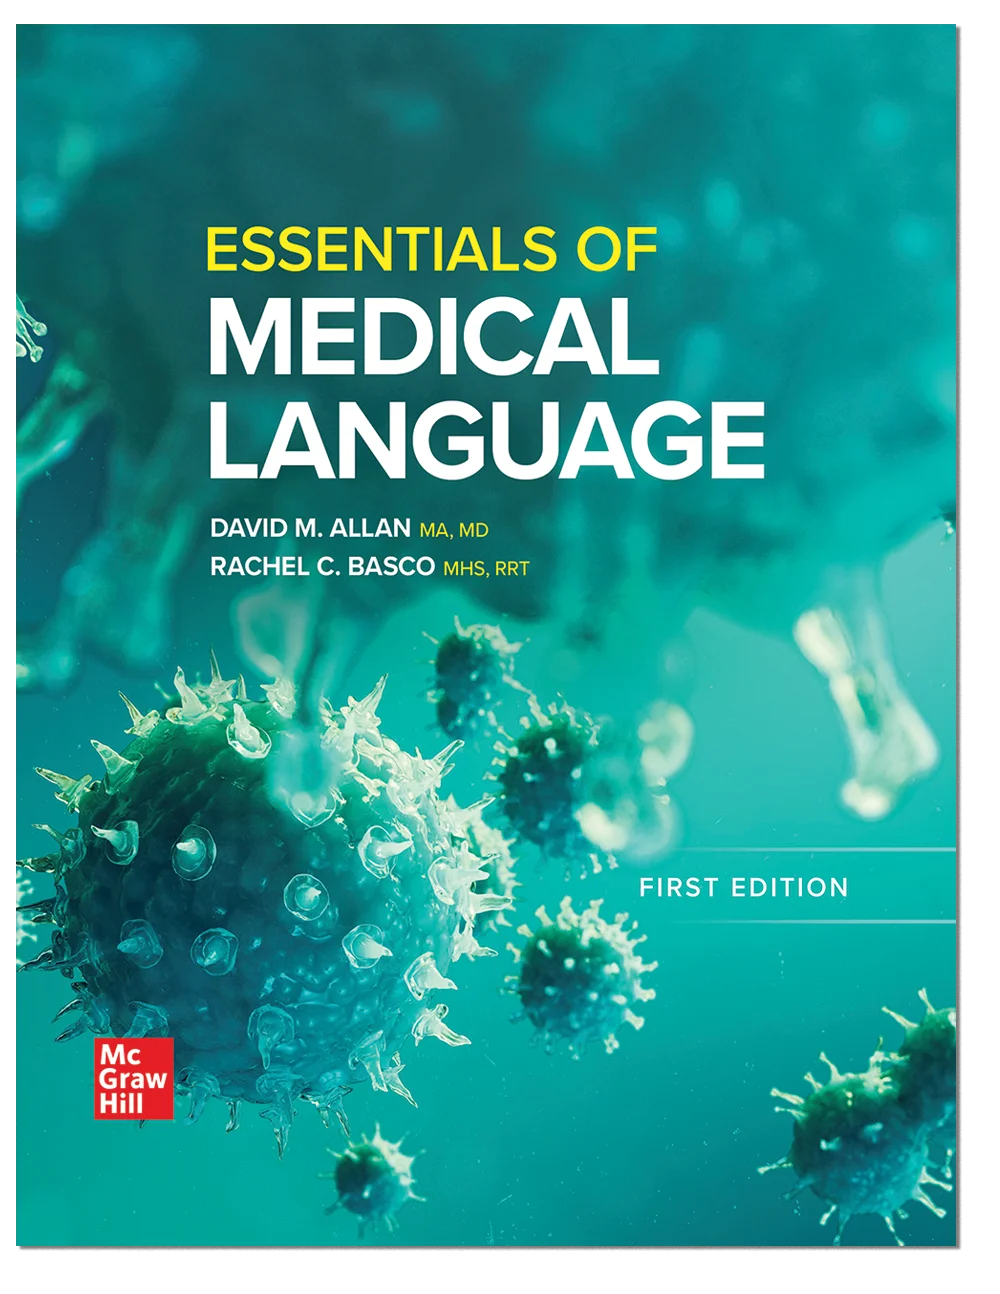 Essentials of Medical Language cover